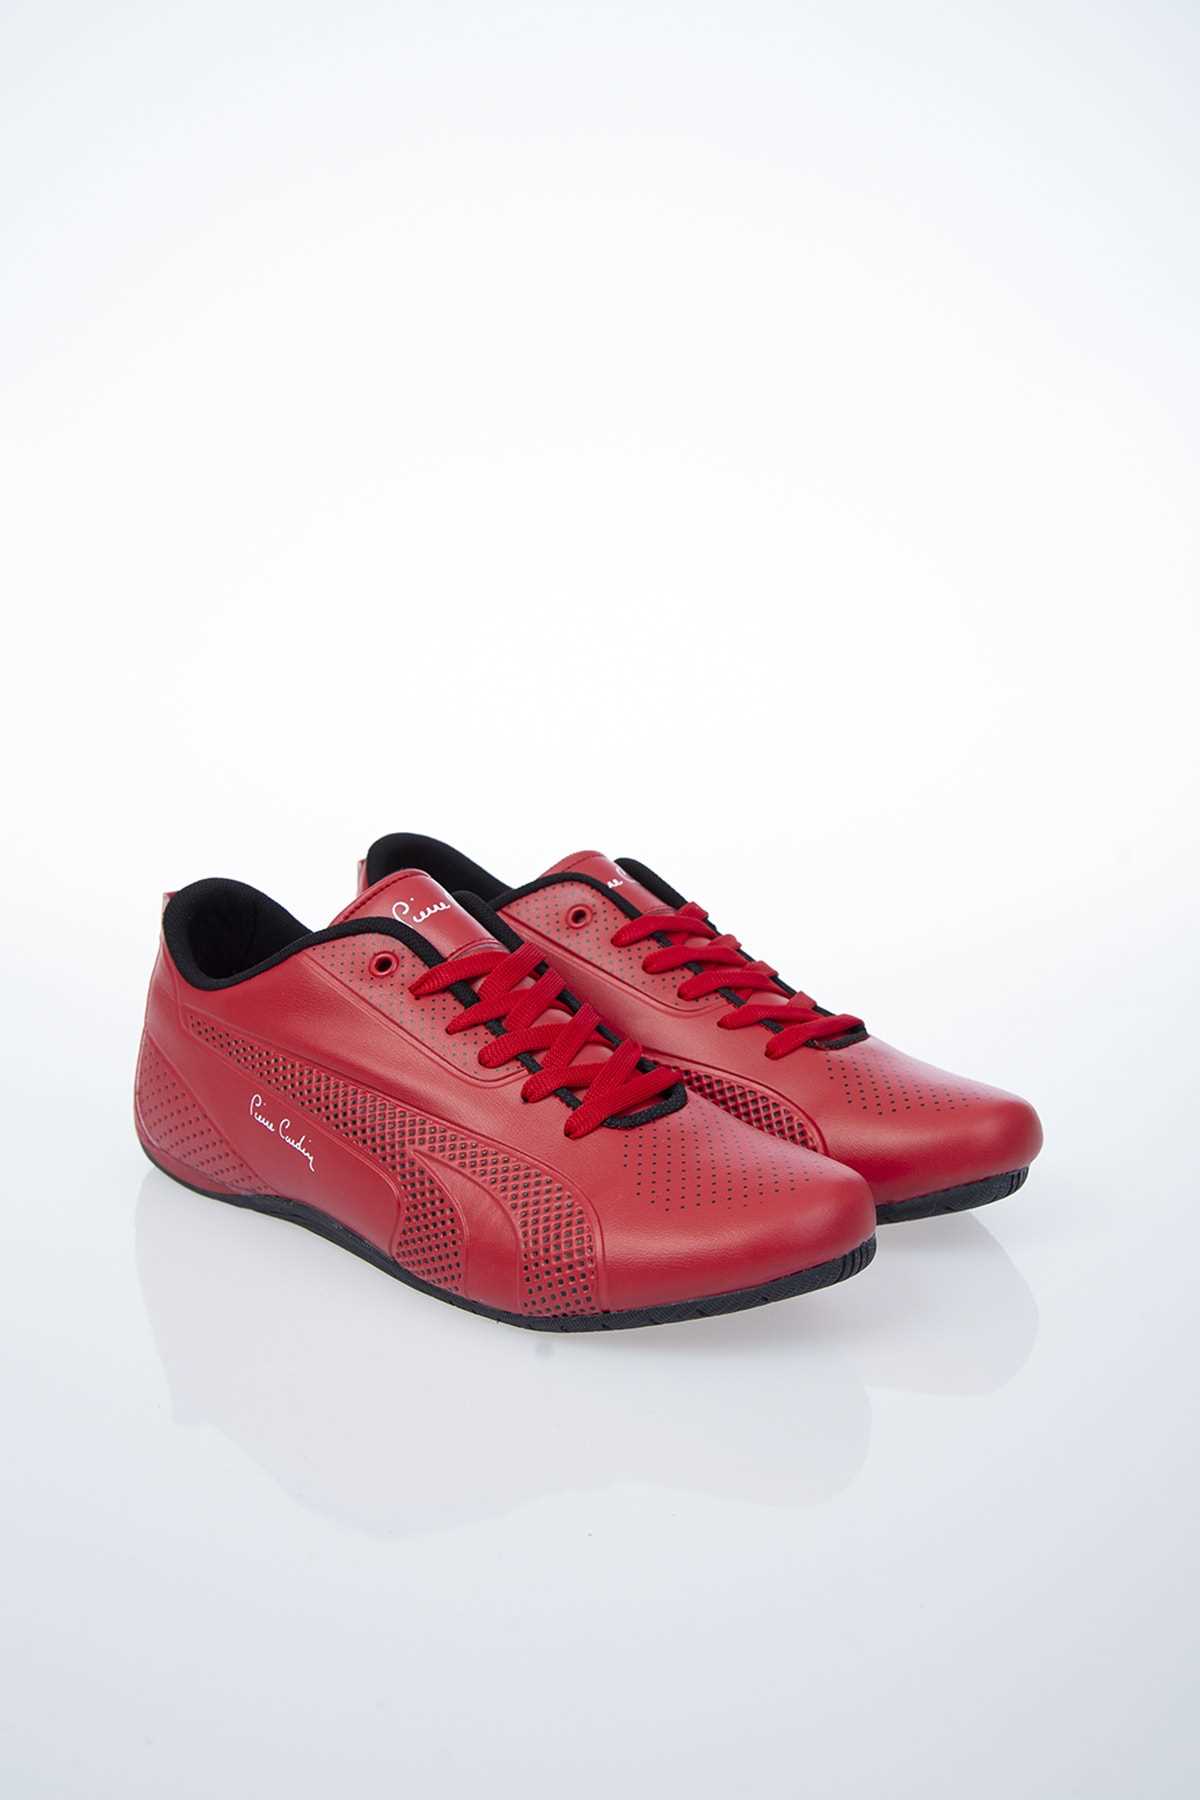 خرید انلاین کفش اسپرت مردانه خاص زیبا پیرکاردین رنگ قرمز ty36388779